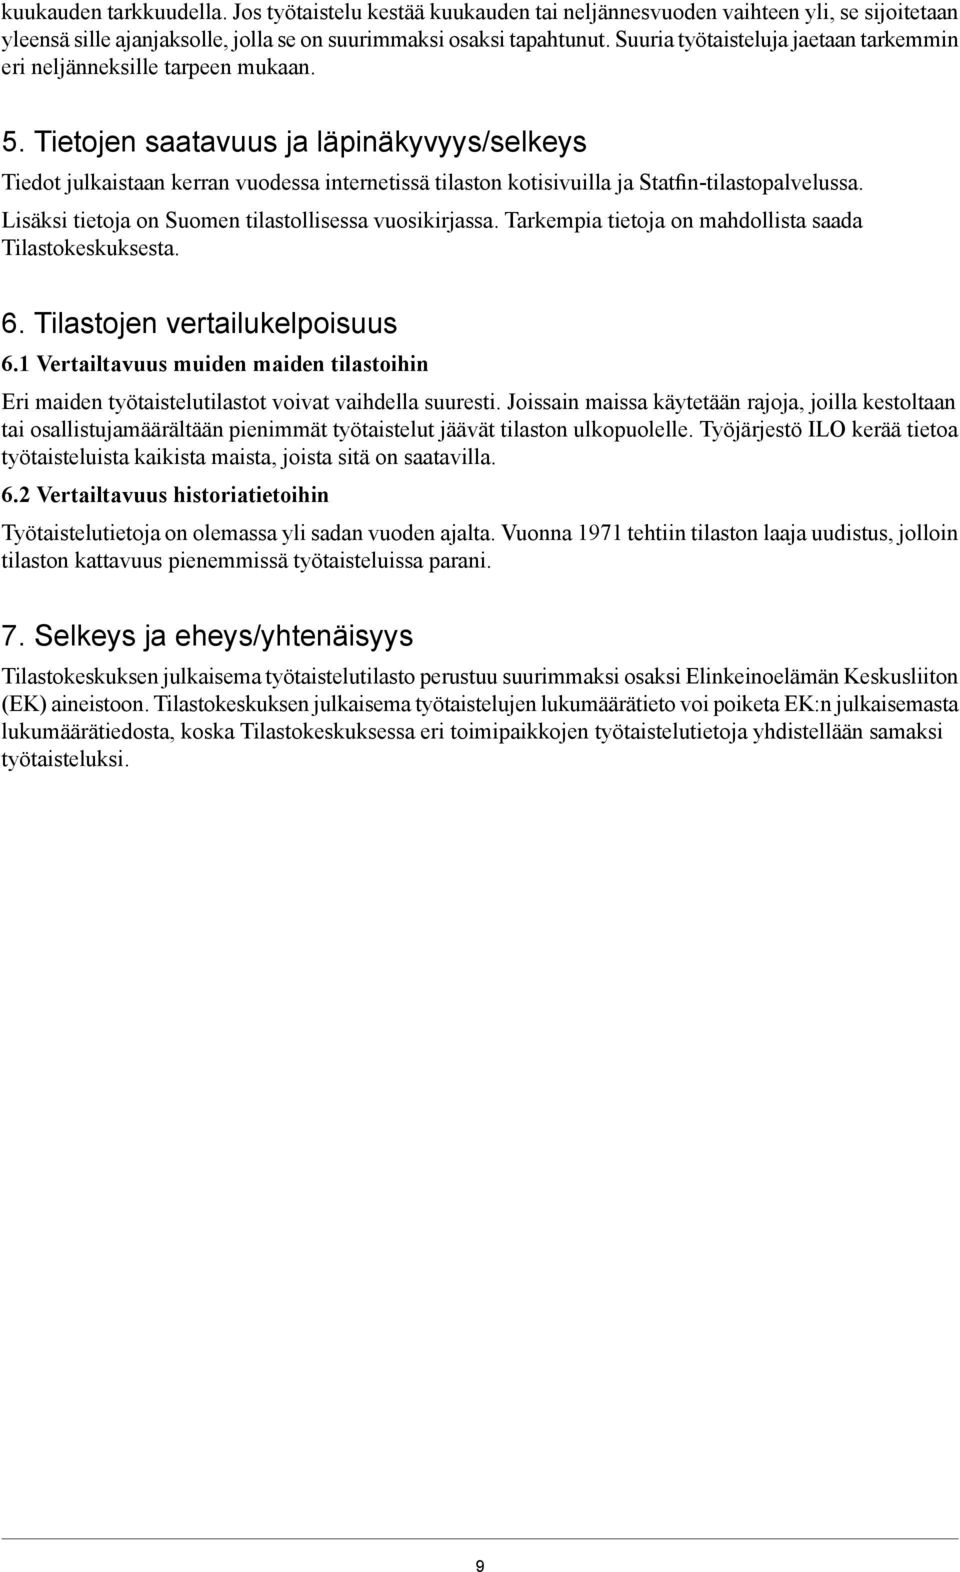 Tietojen saatavuus ja läpinäkyvyys/selkeys Tiedot julkaistaan kerran vuodessa internetissä tilaston kotisivuilla ja Statfin-tilastopalvelussa. Lisäksi tietoja on Suomen tilastollisessa vuosikirjassa.